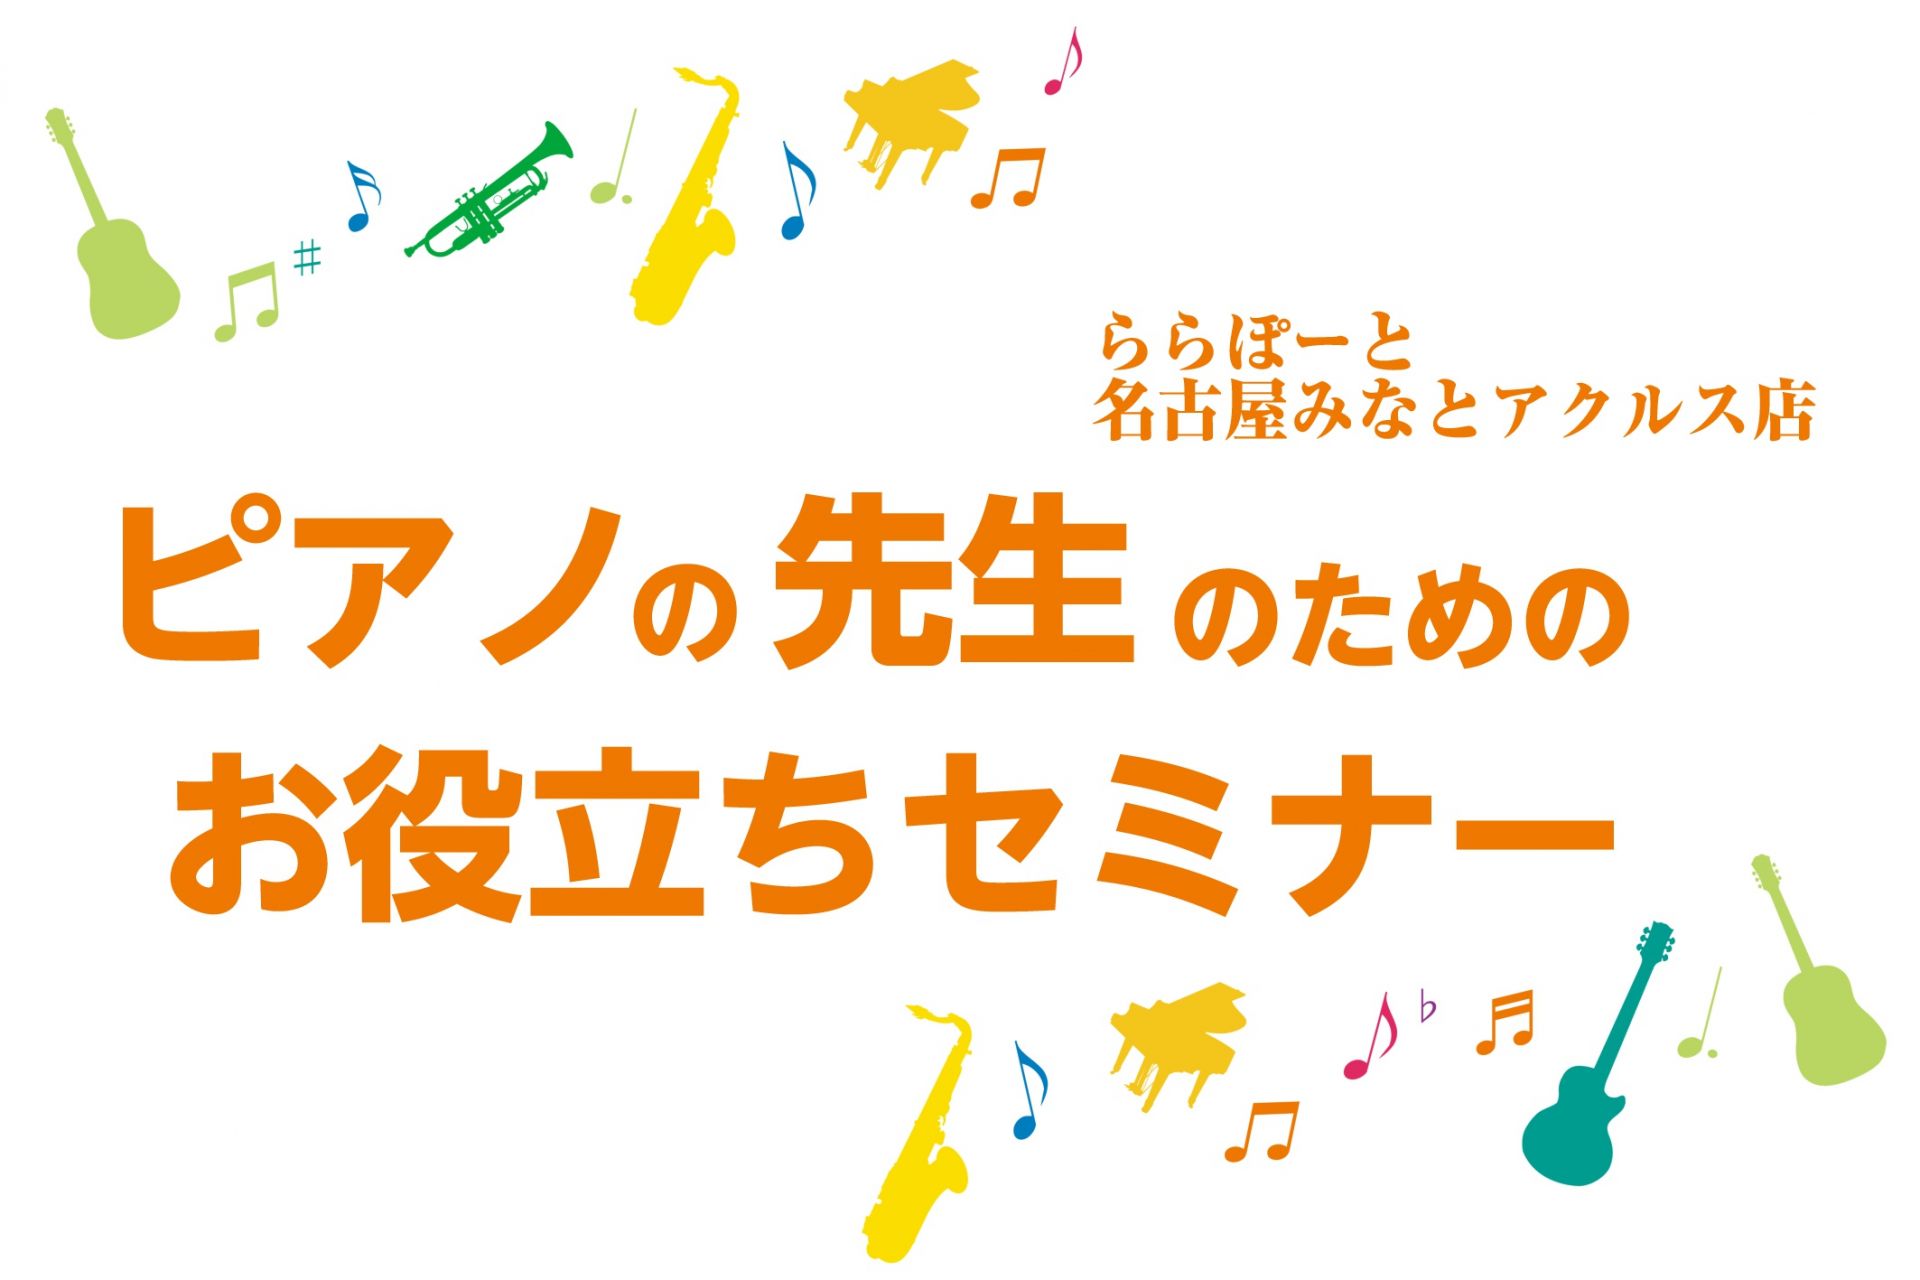 4月26日(金)大内孝夫先生による「生徒が集まる！音楽教室作り」公開講座を開催致します。